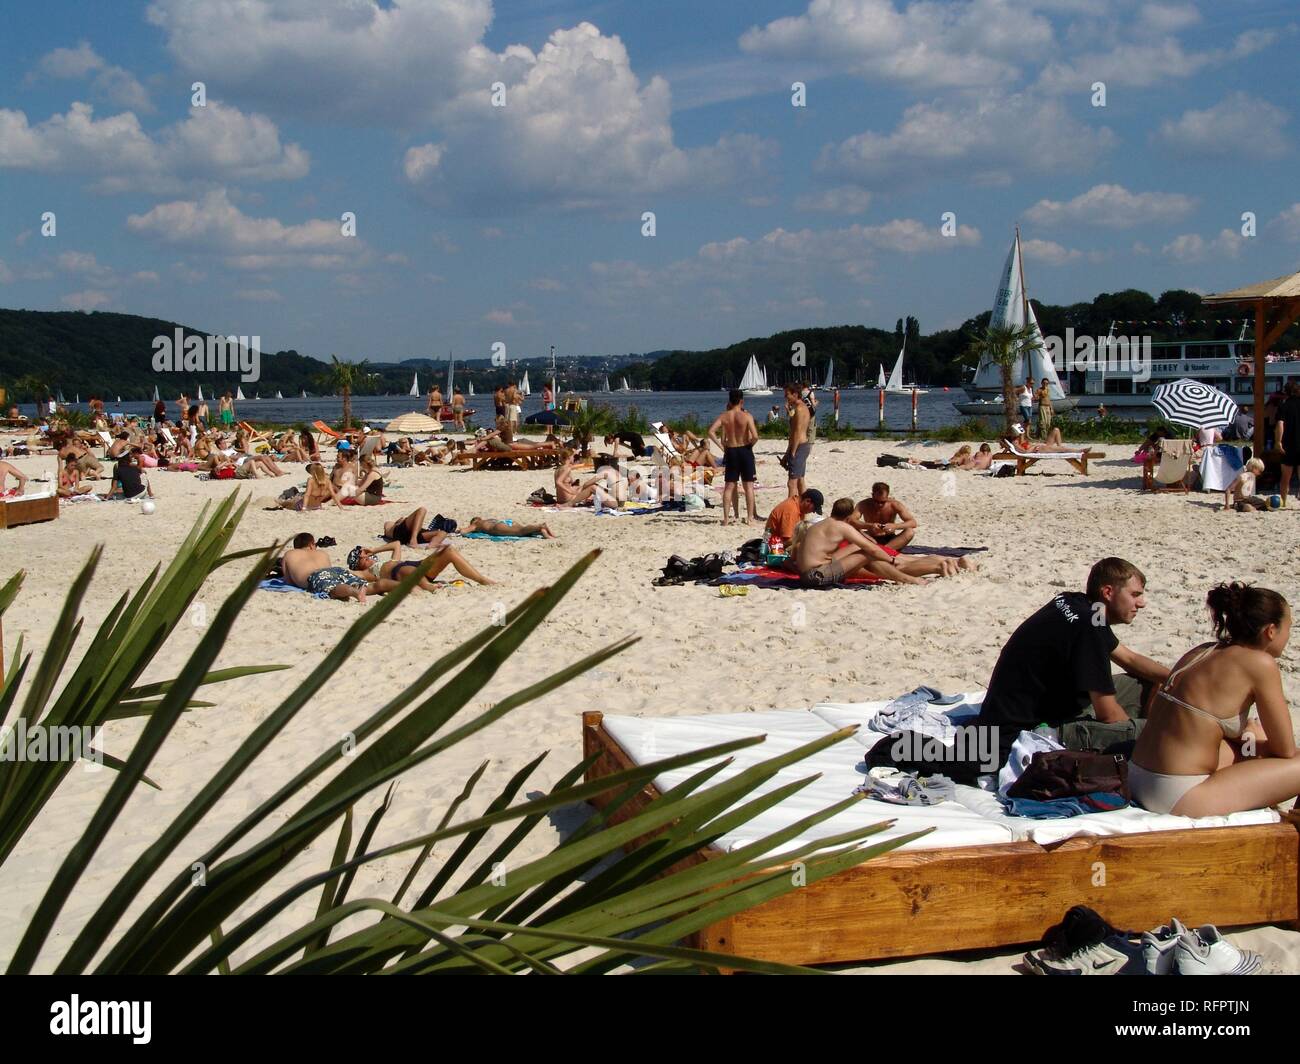 DEU, Germania, Essen : lago Baldeneysee, fiume Ruhr. Artificiale di spiaggia di sabbia per la refrigerazione e divertimento presso la riva della Ruhr. Seaside Beach Foto Stock